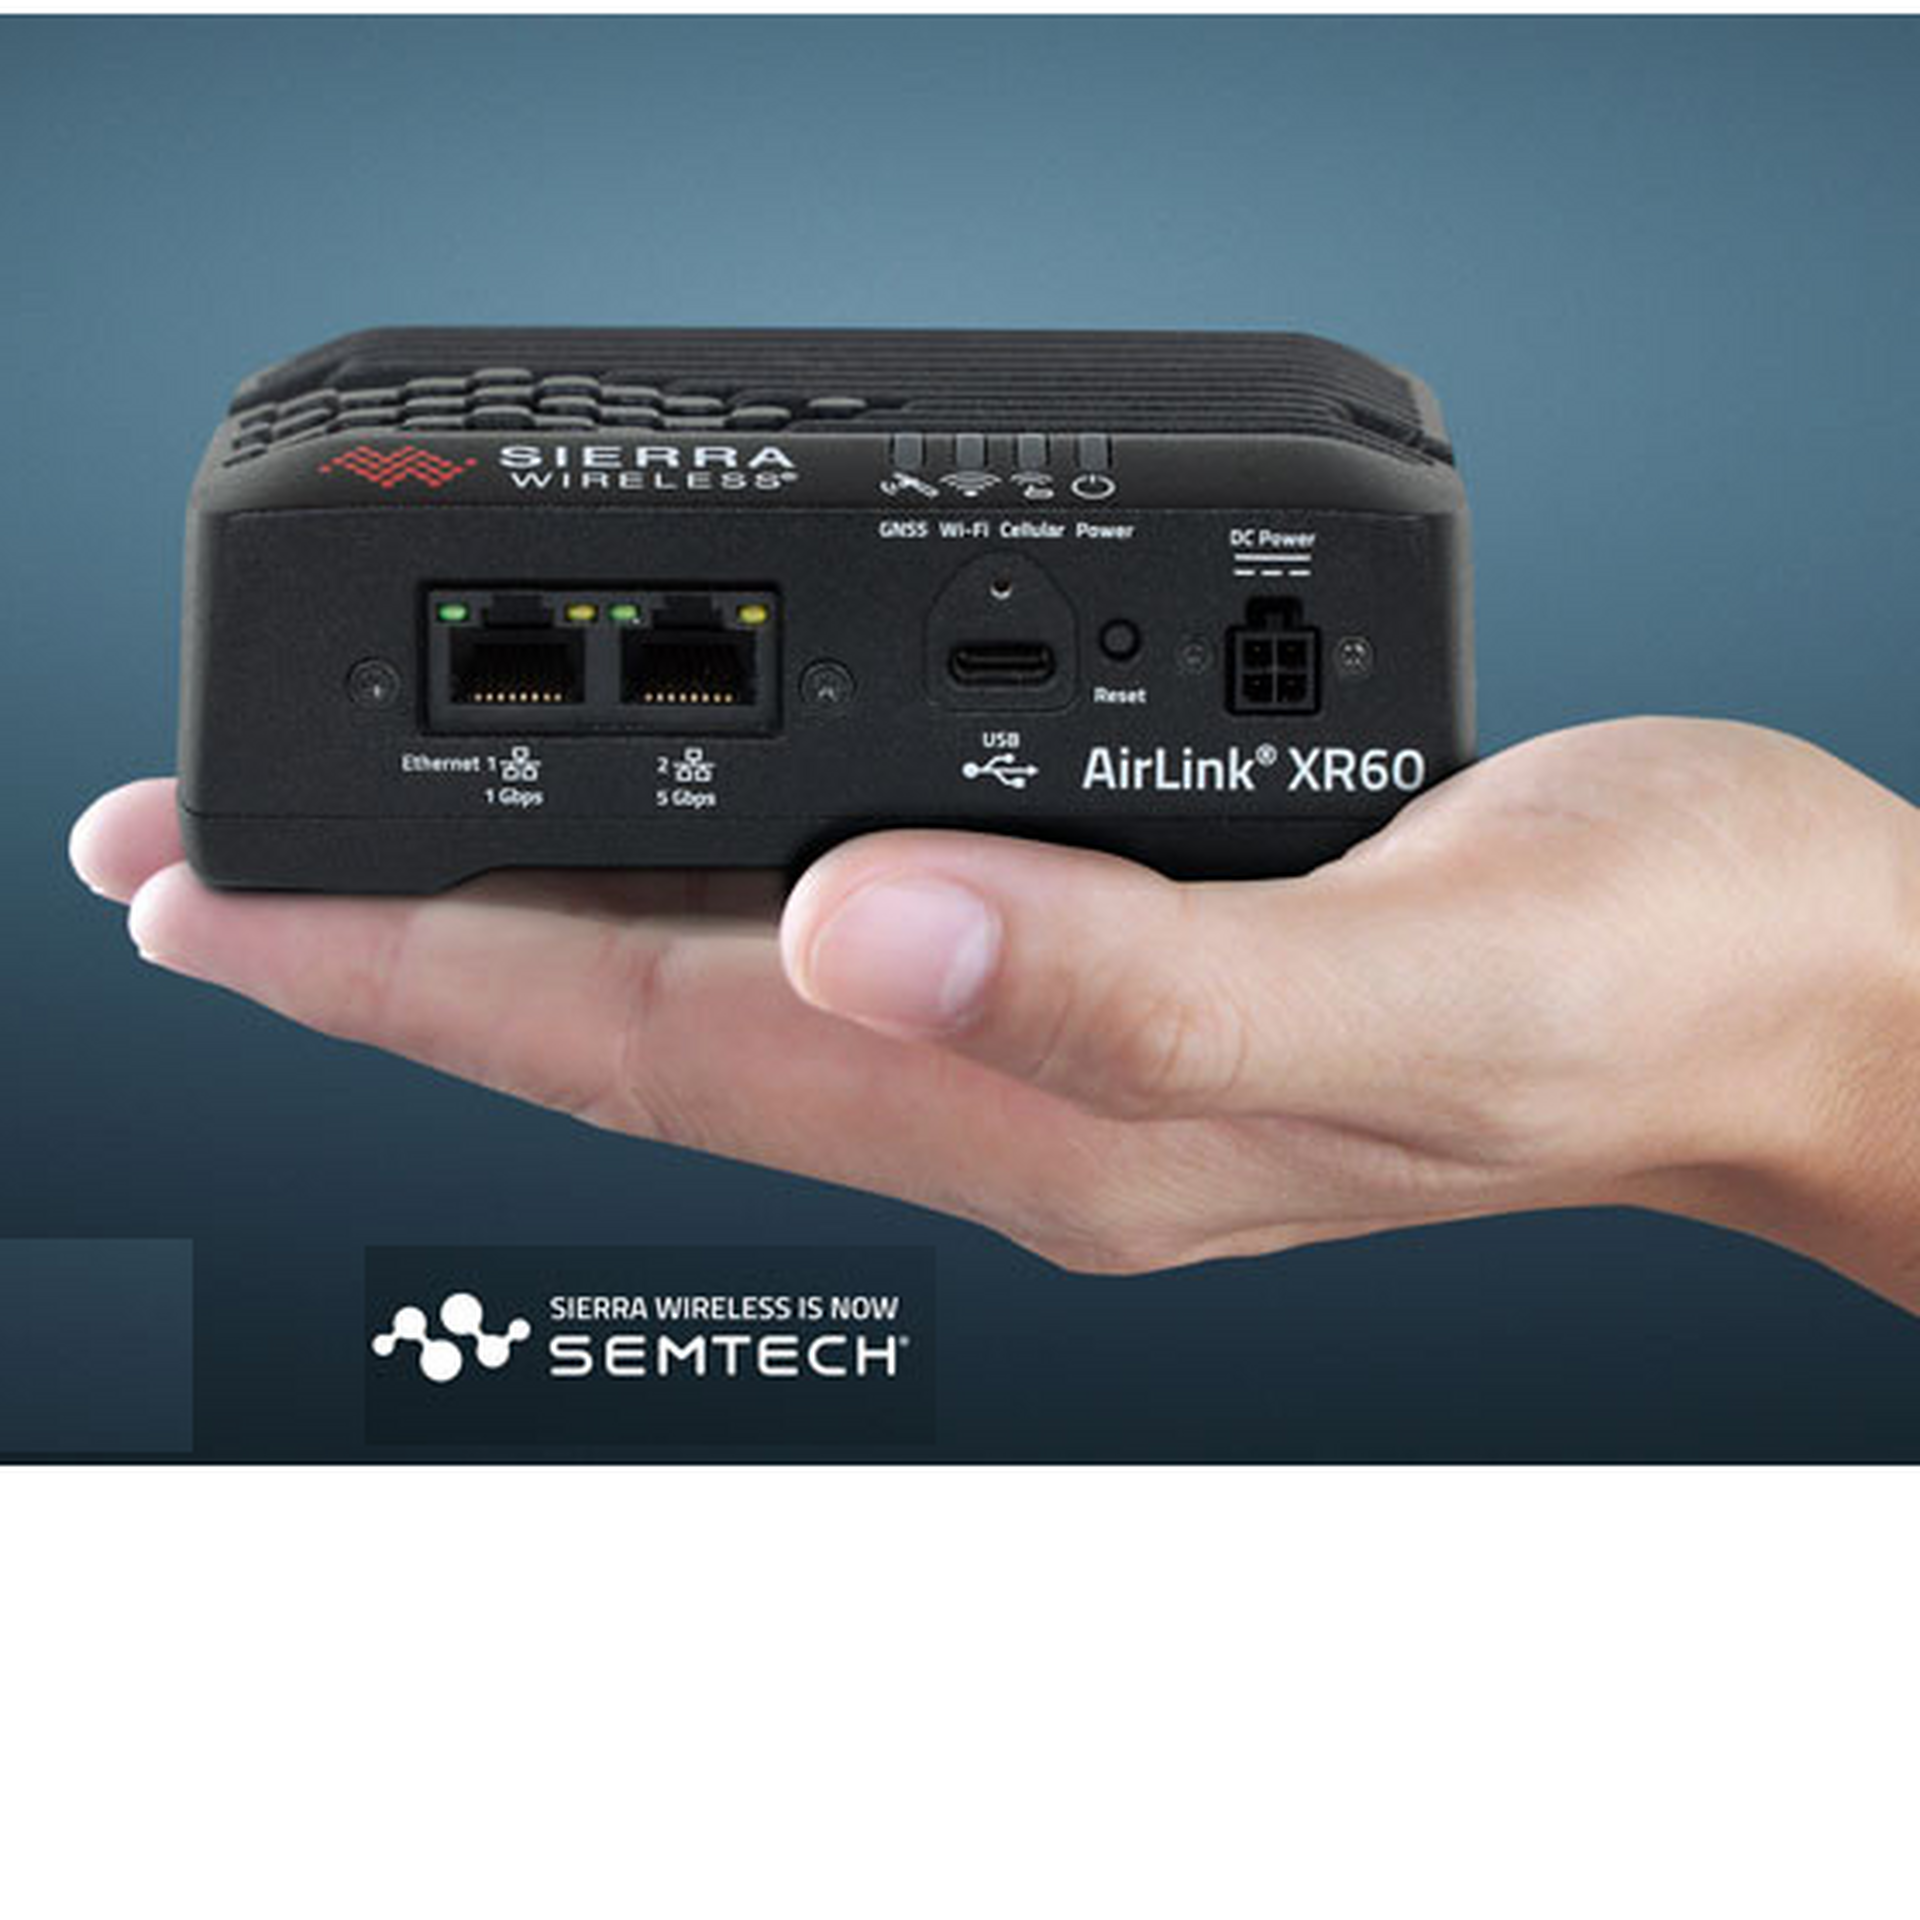 Semtech Sierra Wireless Airlink XR60